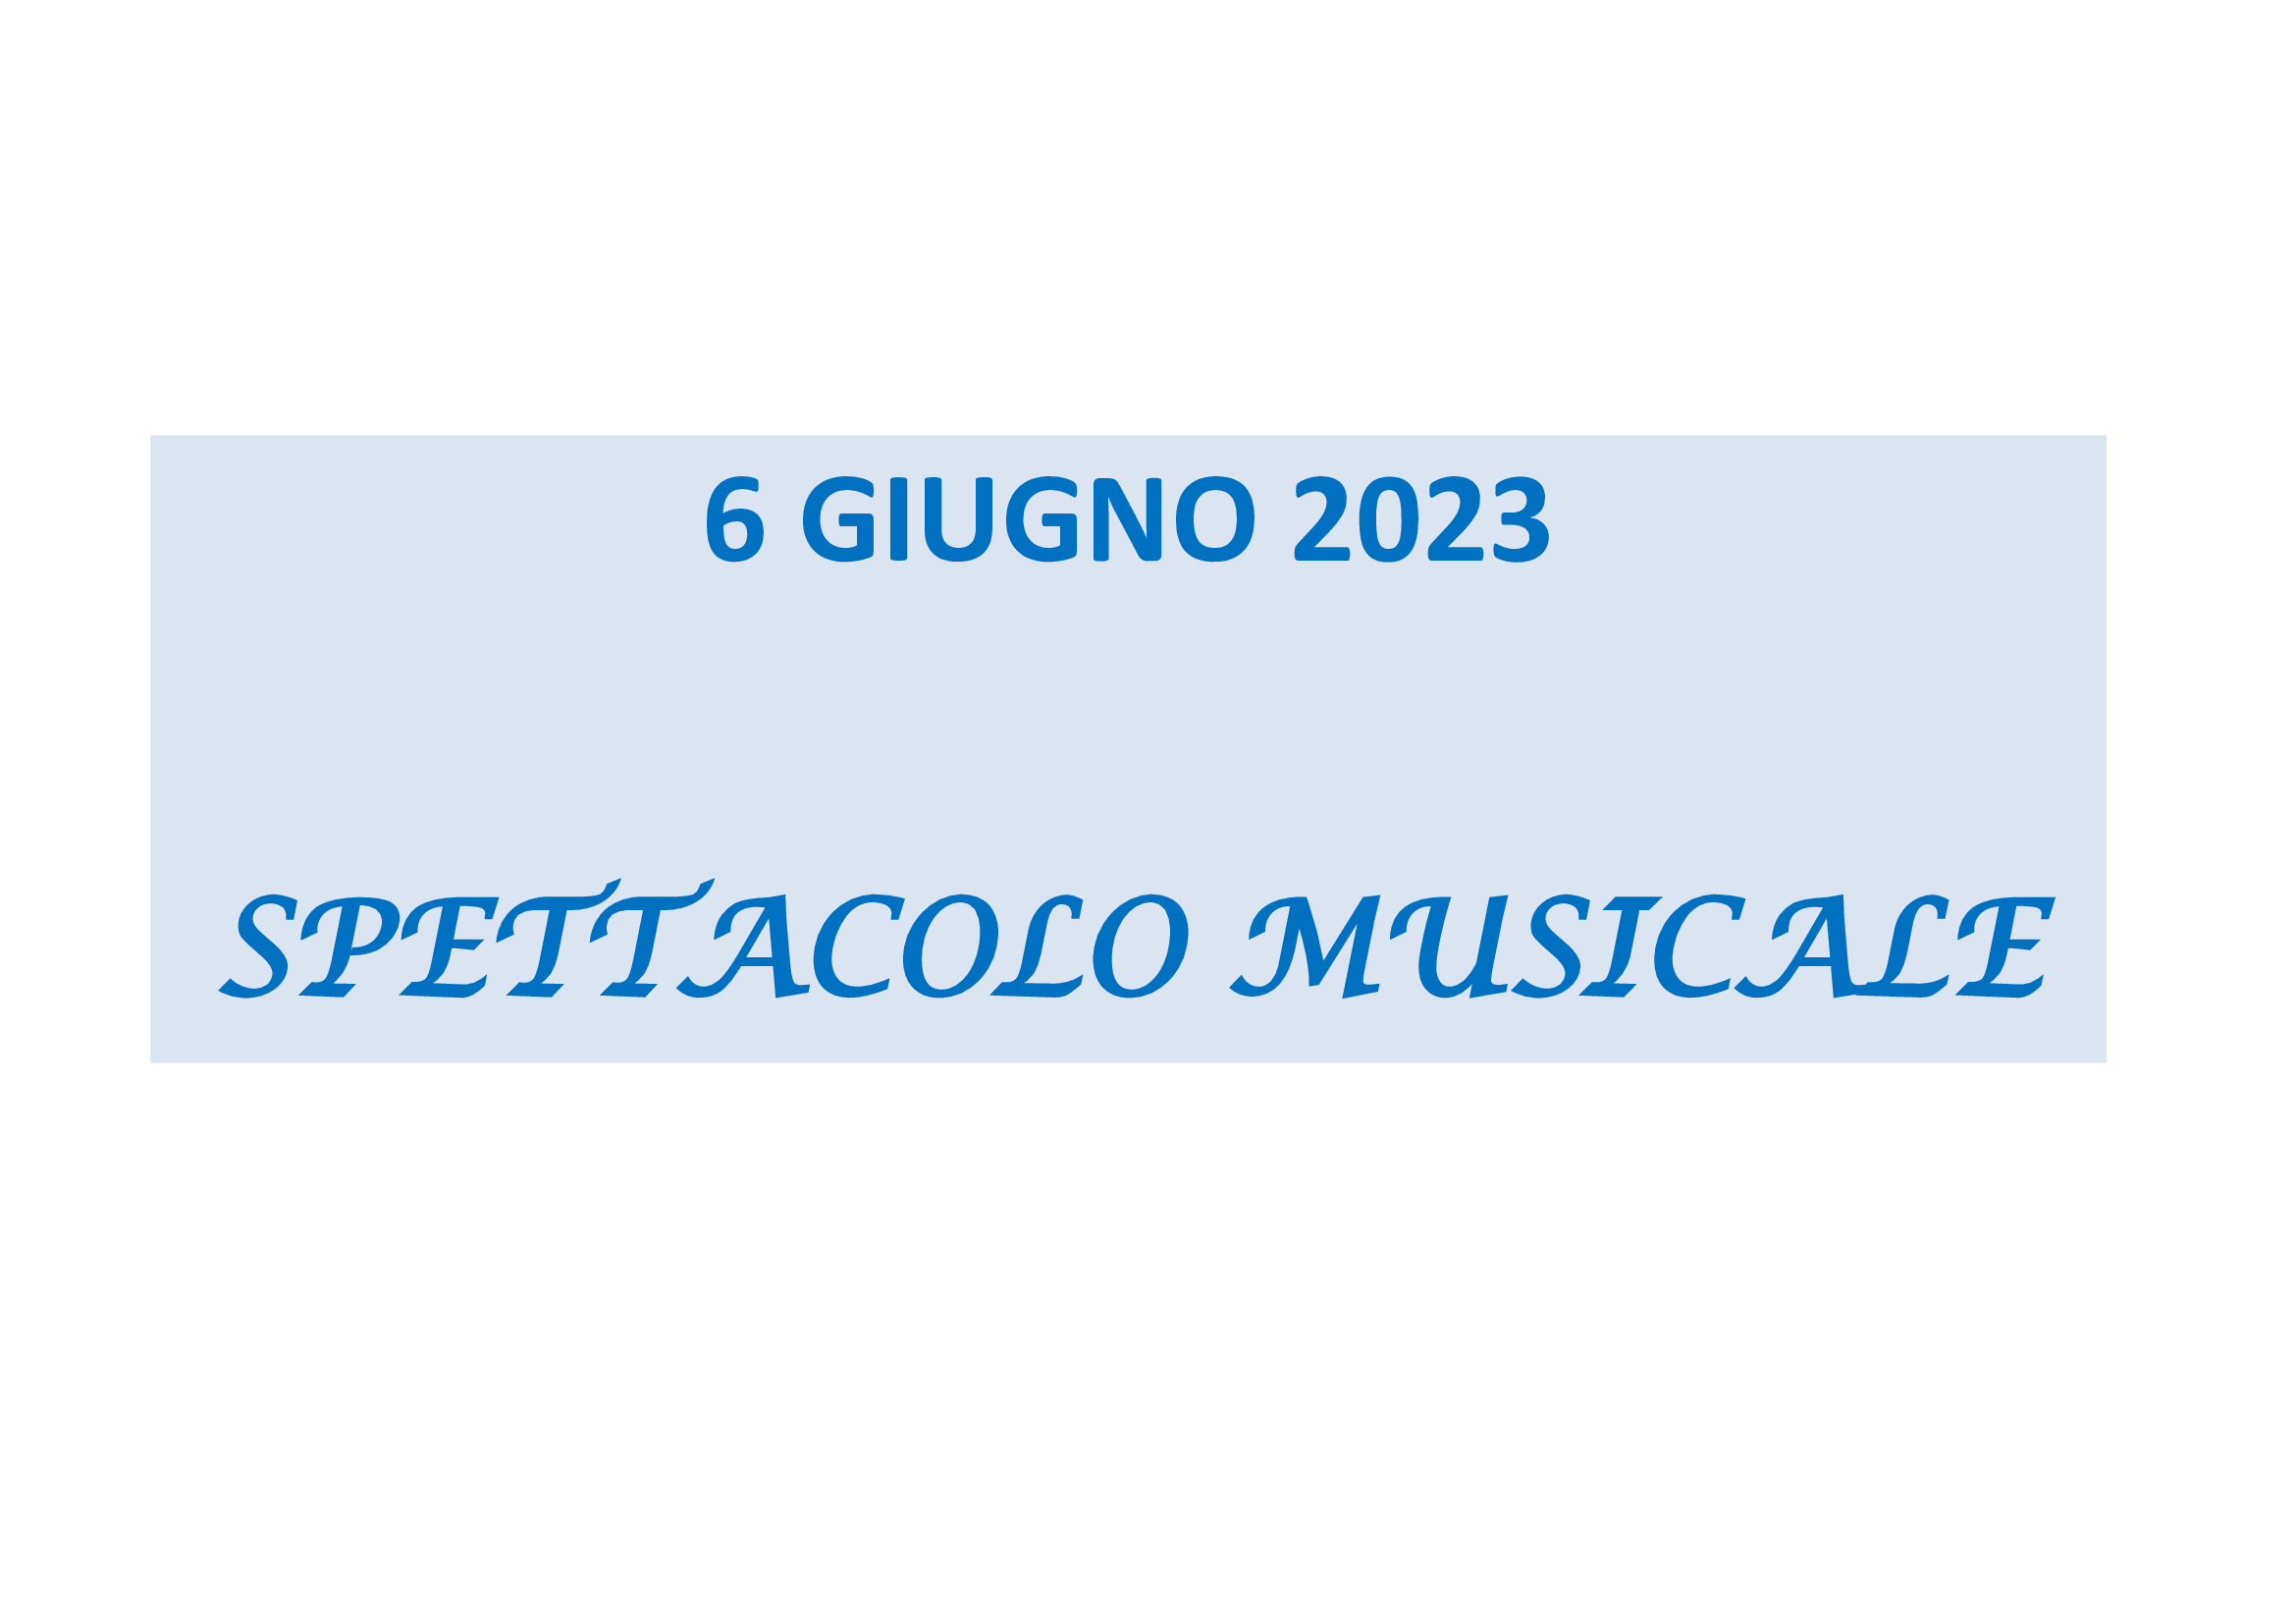 6-GIUGNO-2023 (2).png